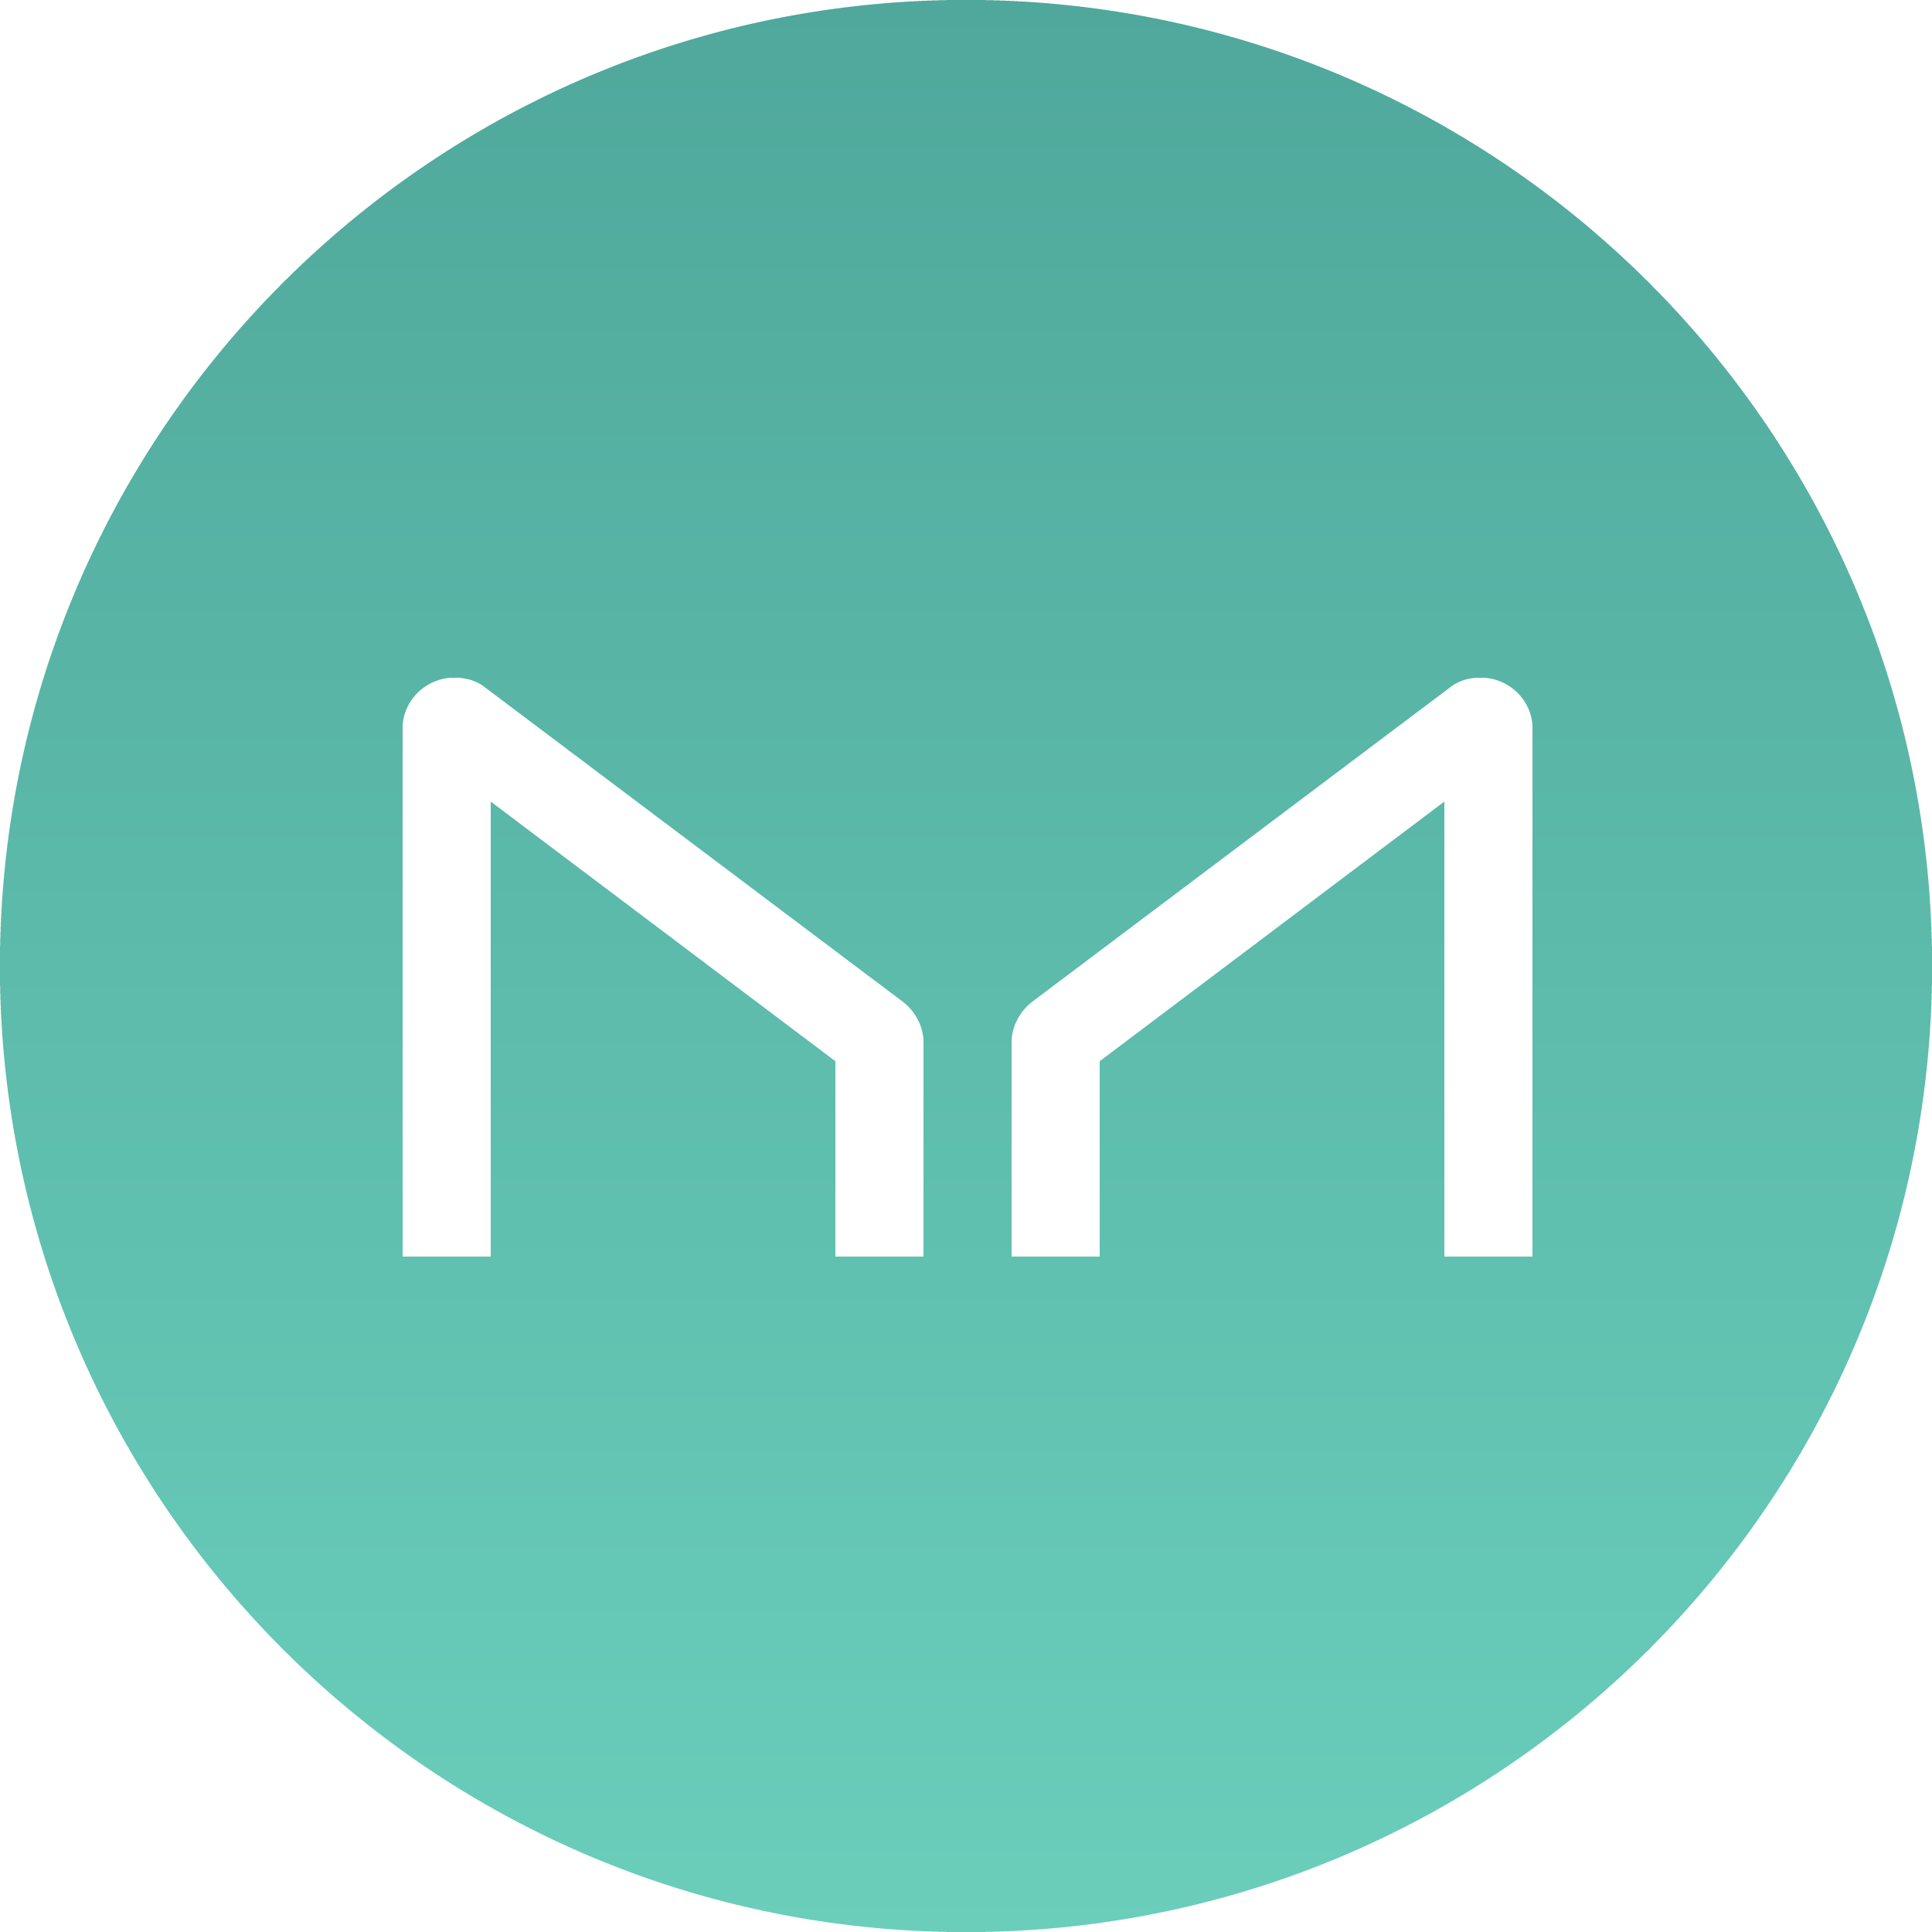 maker logo